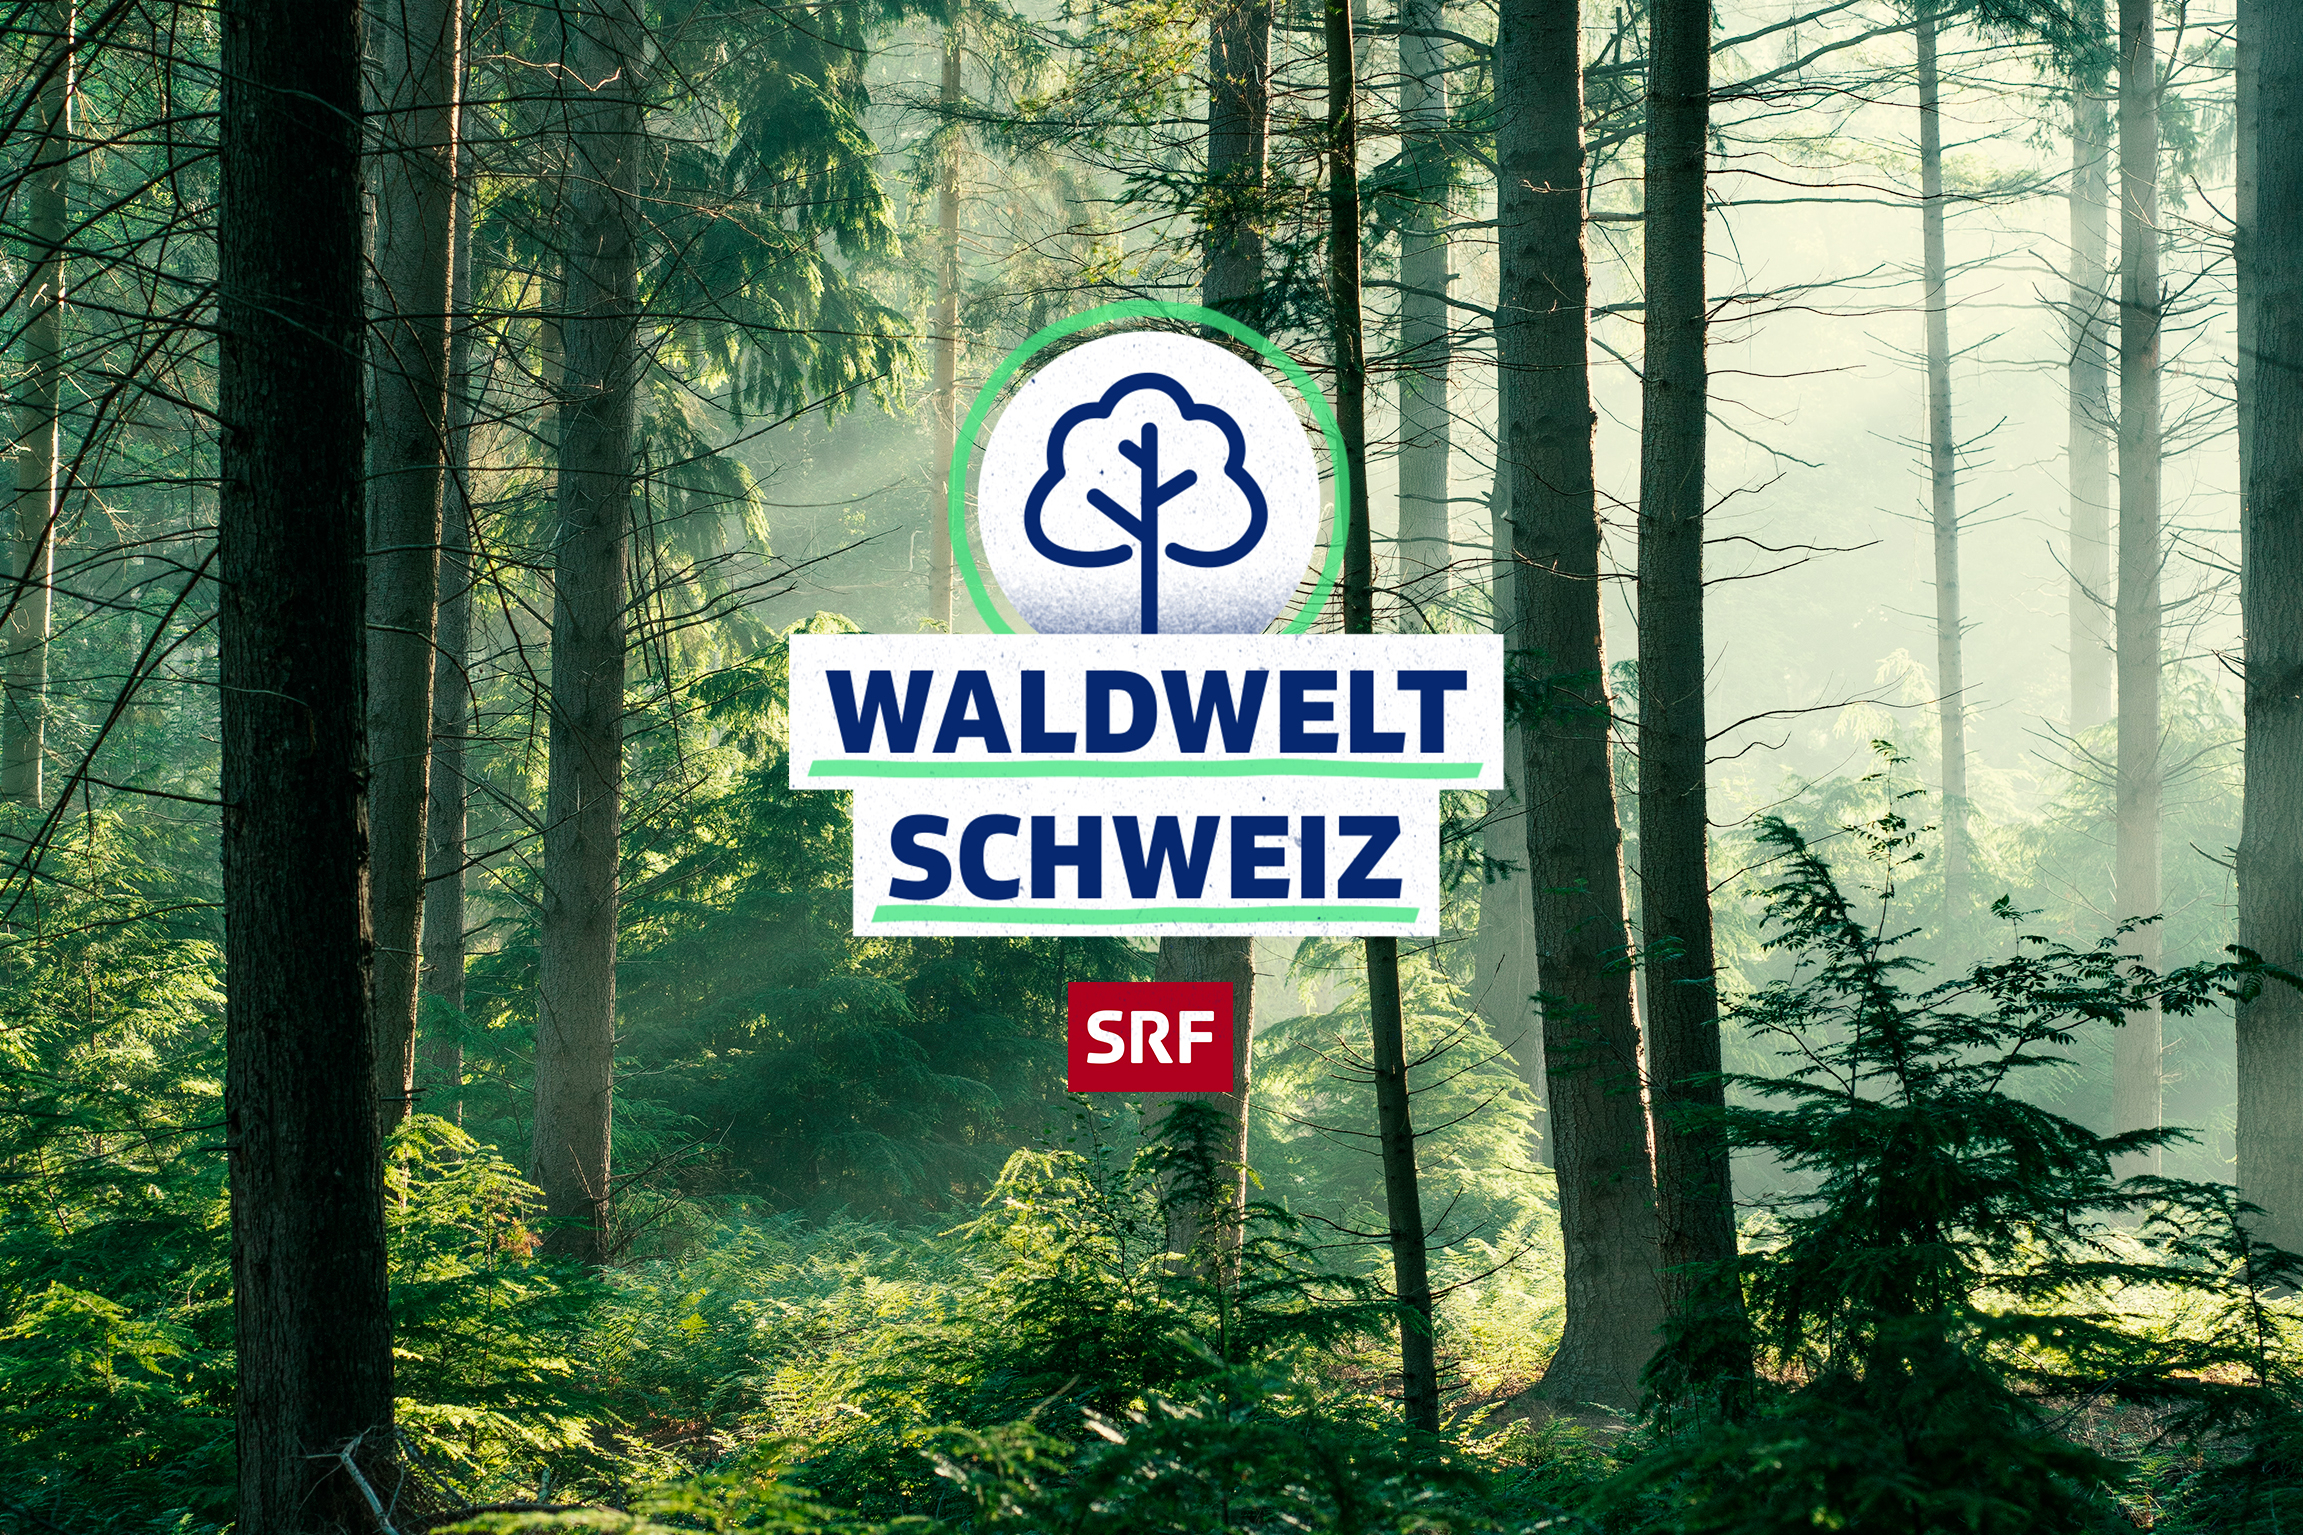 SRF school Waldwelt Schweiz Keyvisual 2021